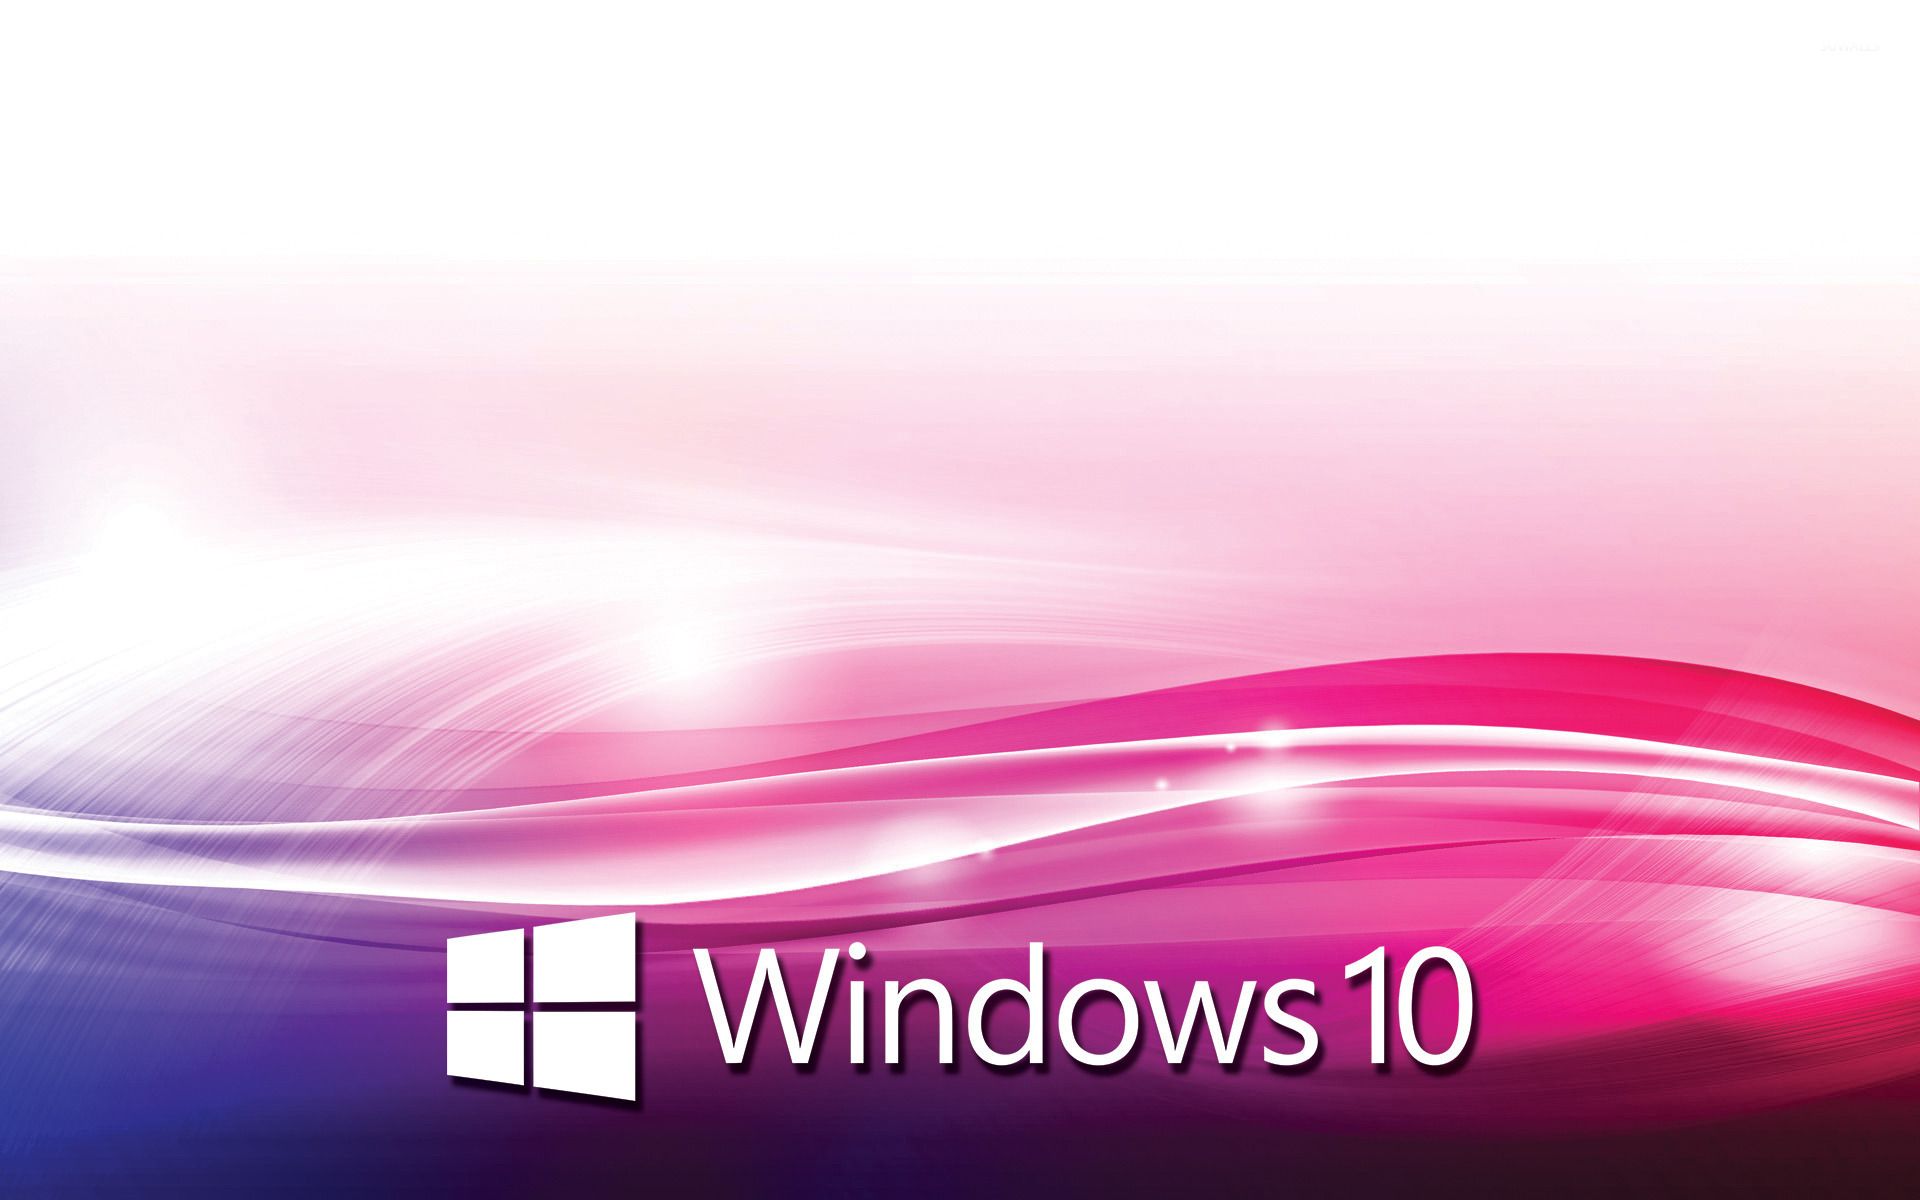 Hình nền Windows 10 hồng: Với những hình nền Windows 10 hồng thật lung linh và quyến rũ, bạn sẽ không thể rời mắt khỏi màn hình máy tính của mình. Những bức ảnh này sẽ mang đến cho bạn sự nữ tính và tươi trẻ, và cũng làm nổi bật sự độc đáo của phong cách của bạn.